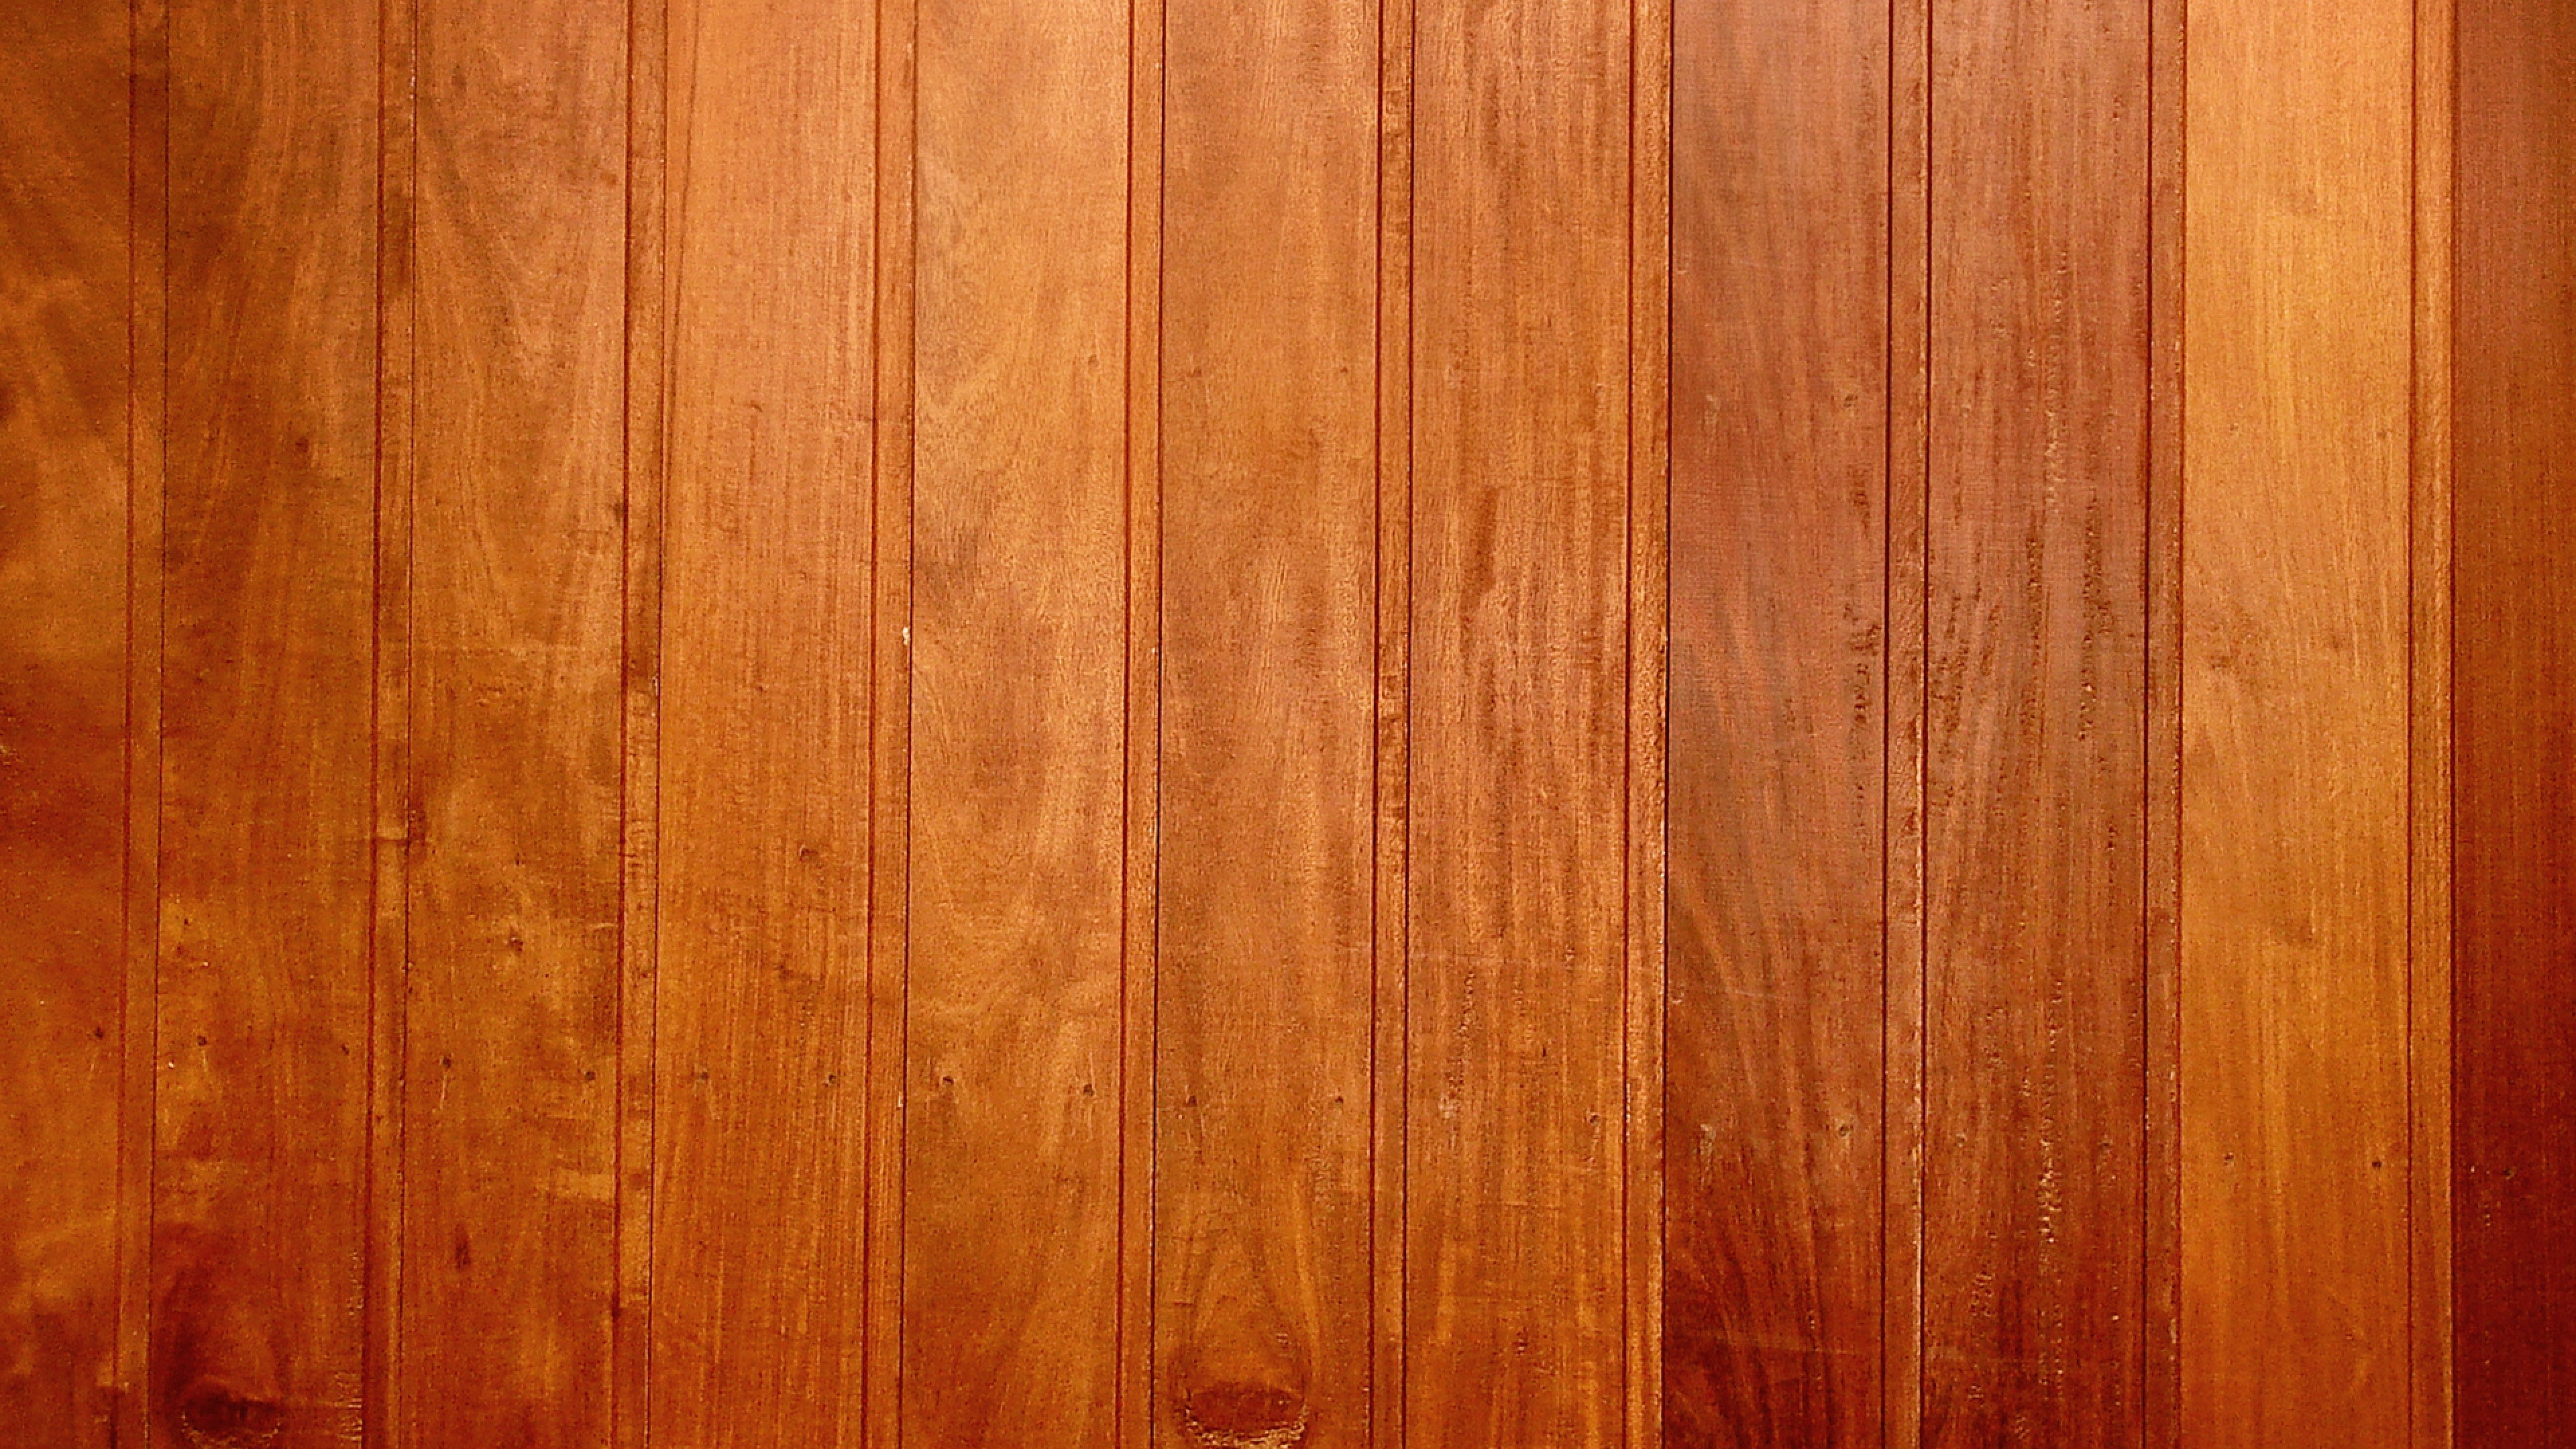 木板壁紙,木材,広葉樹,ウッドステイン,ウッドフローリング,床